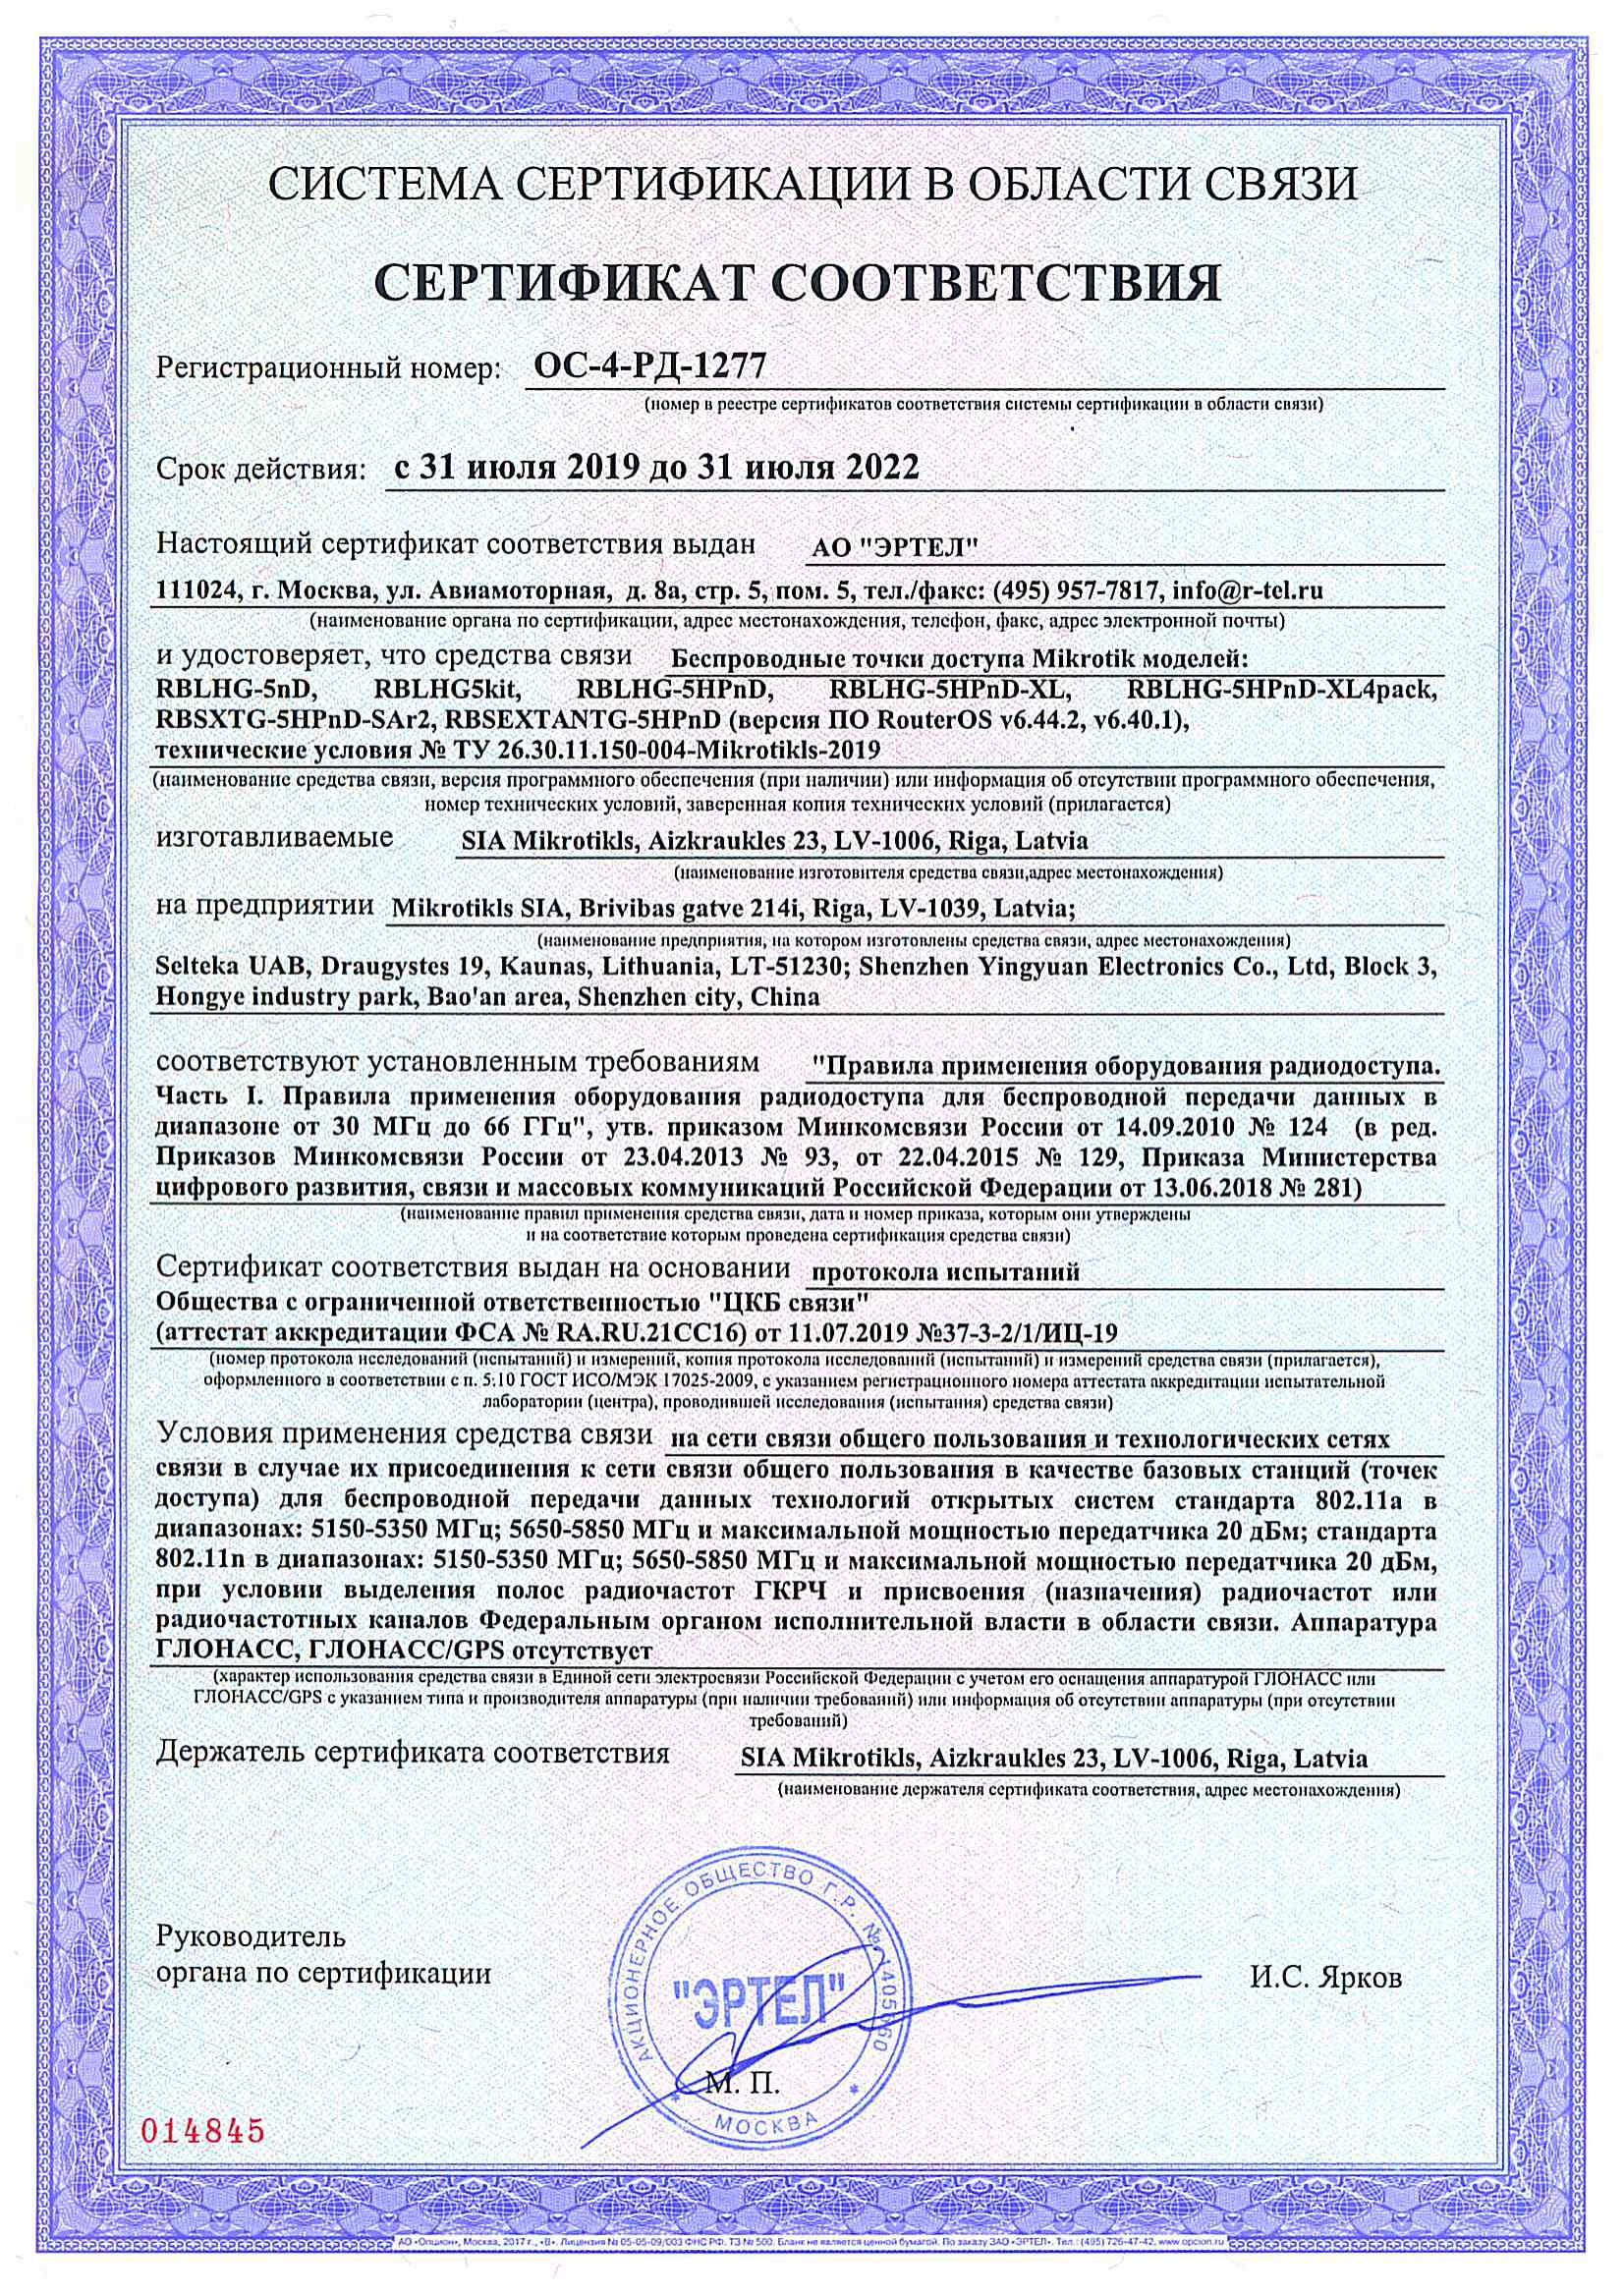 Сертификат соответствия в области связи ОС-4-РД-1277